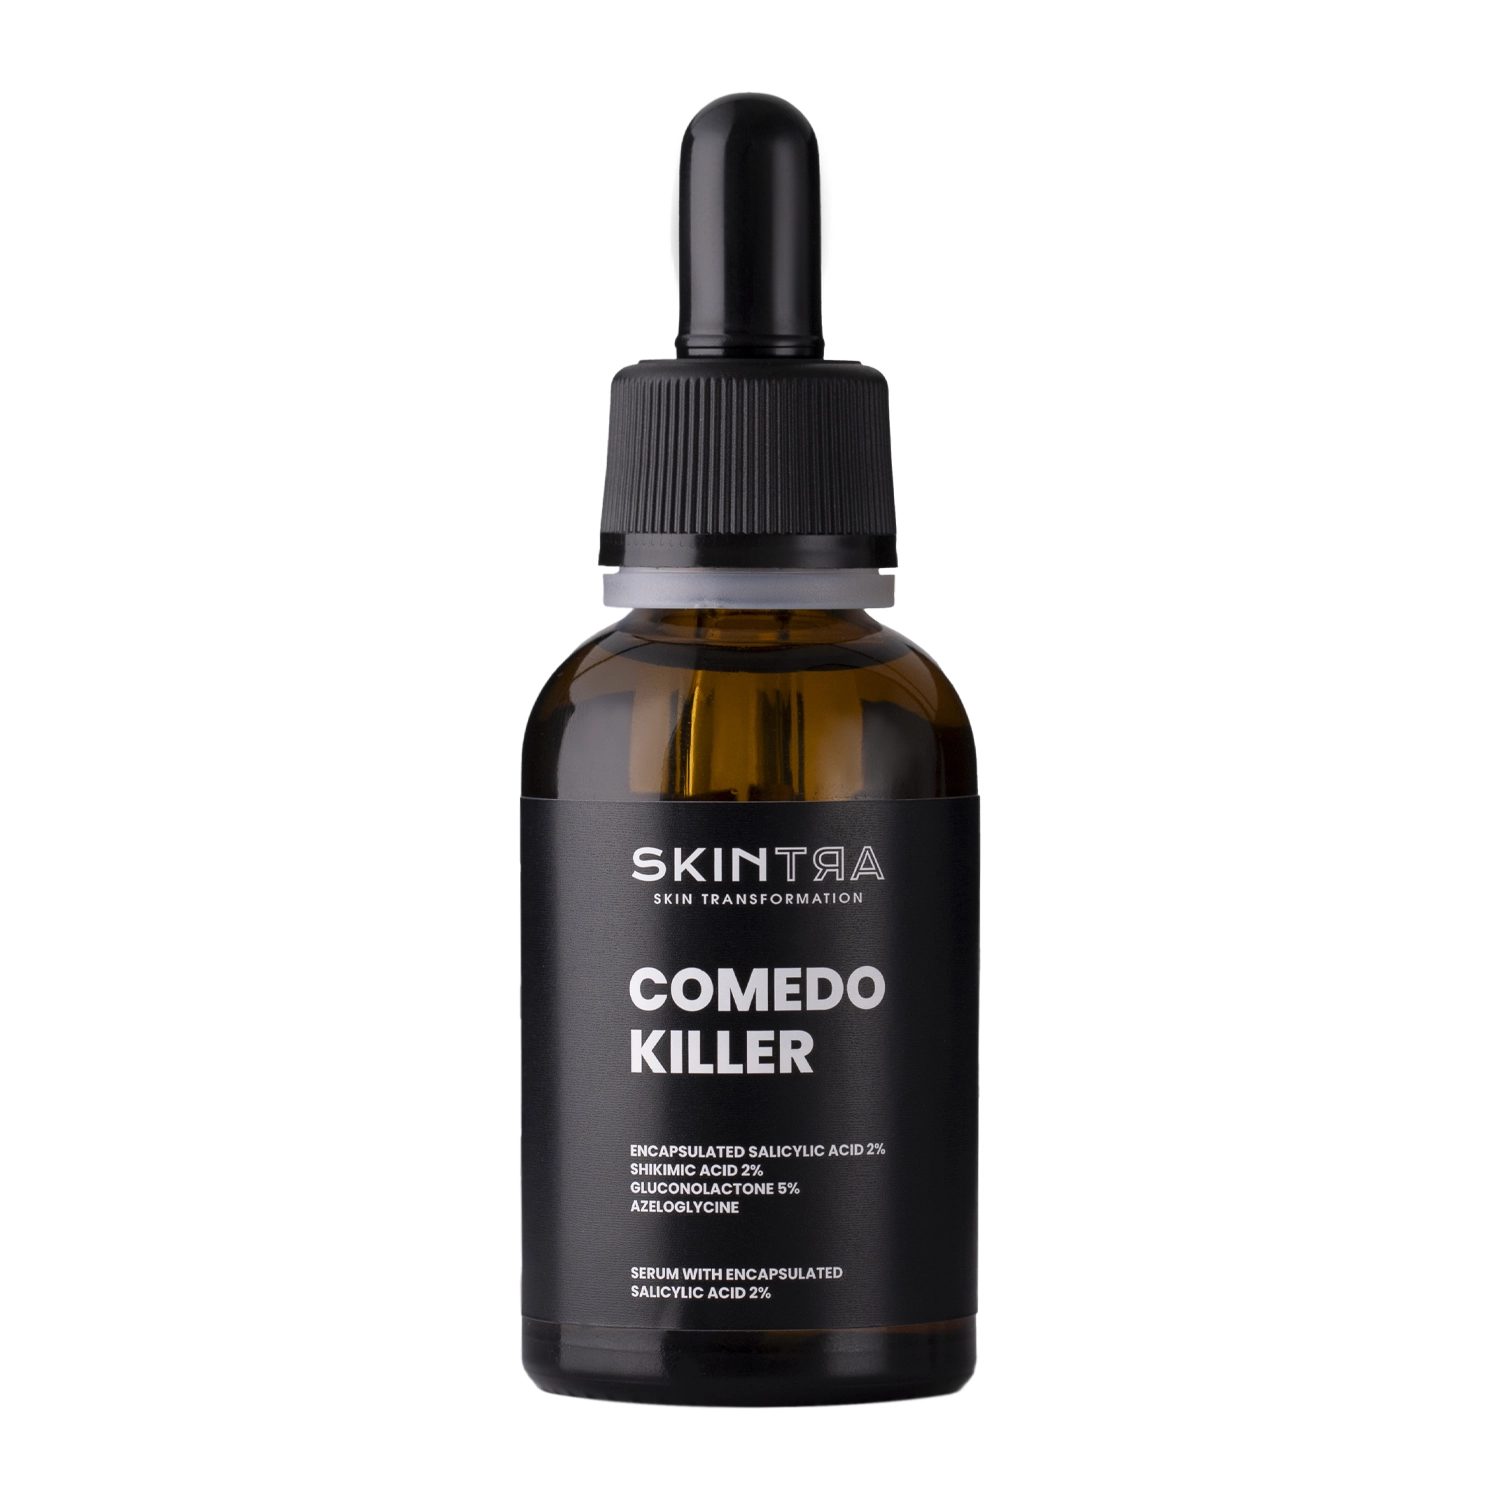 SkinTra - Comedo-killer  - Serum mit eingekapselter Salicylsäure 2% - 30ml